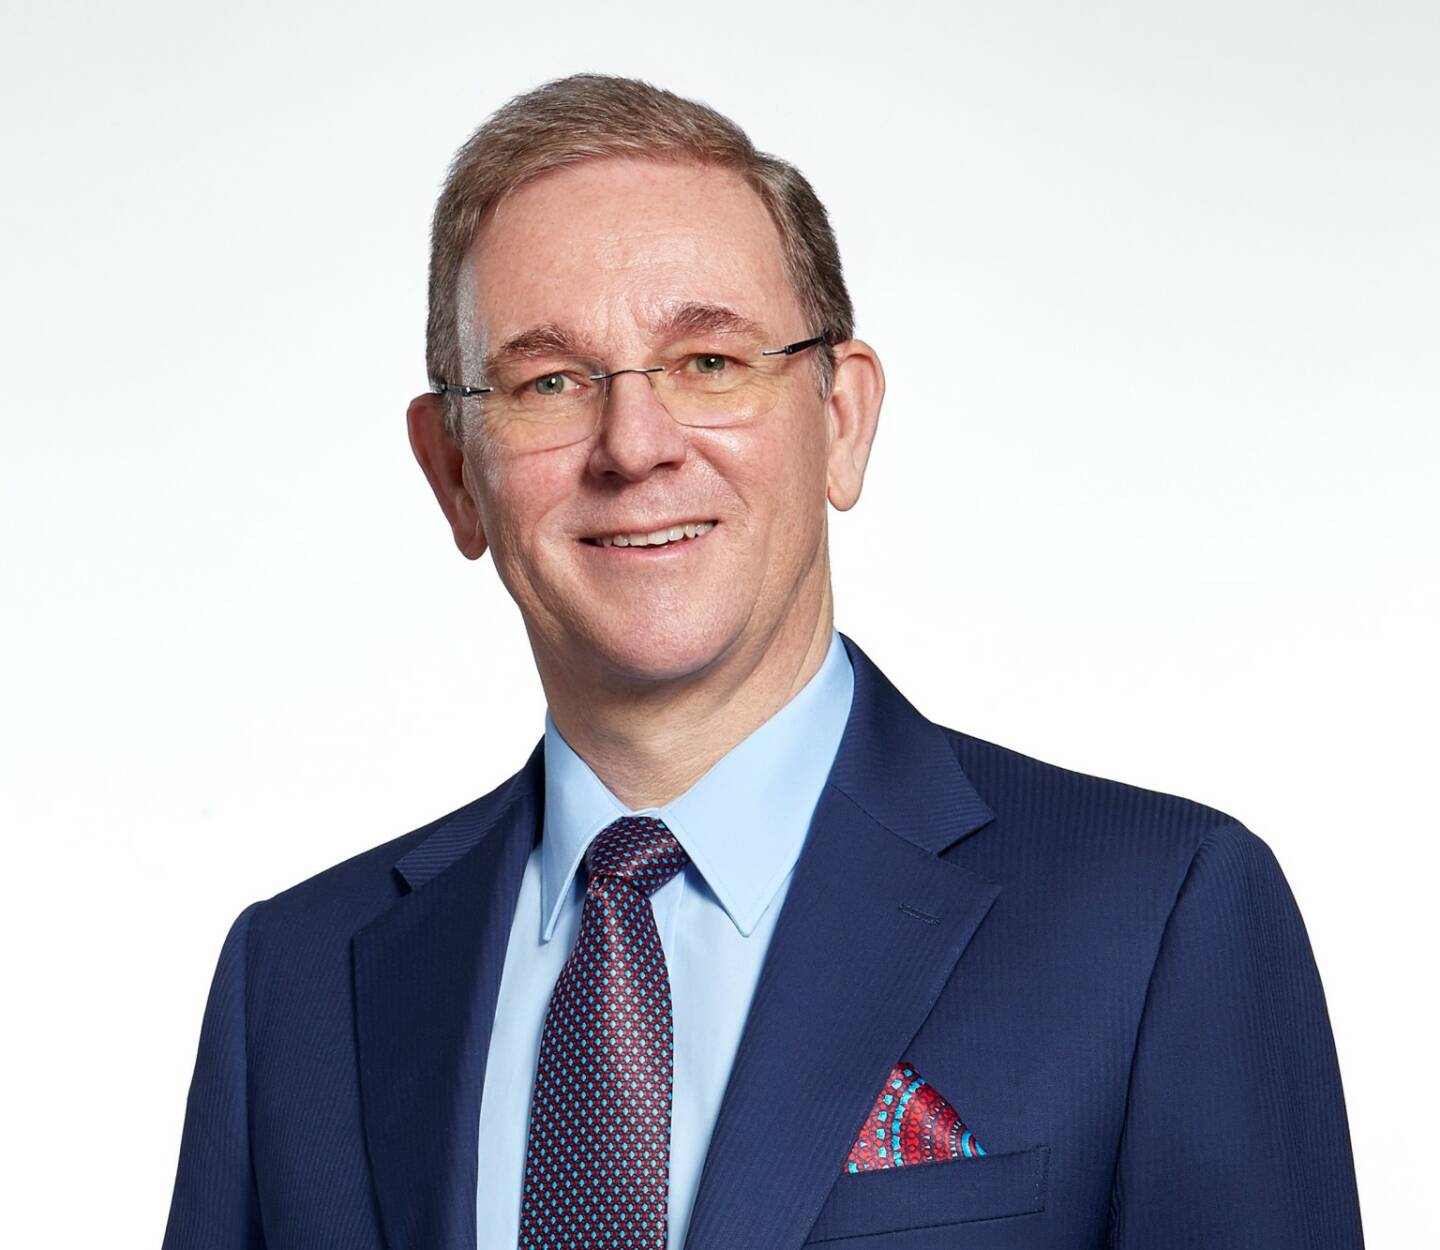 Ab Mai 2020: Peter Oswald neuer CEO der Mayr-Melnhof Karton AG, Credit: Mayr-Melnhof